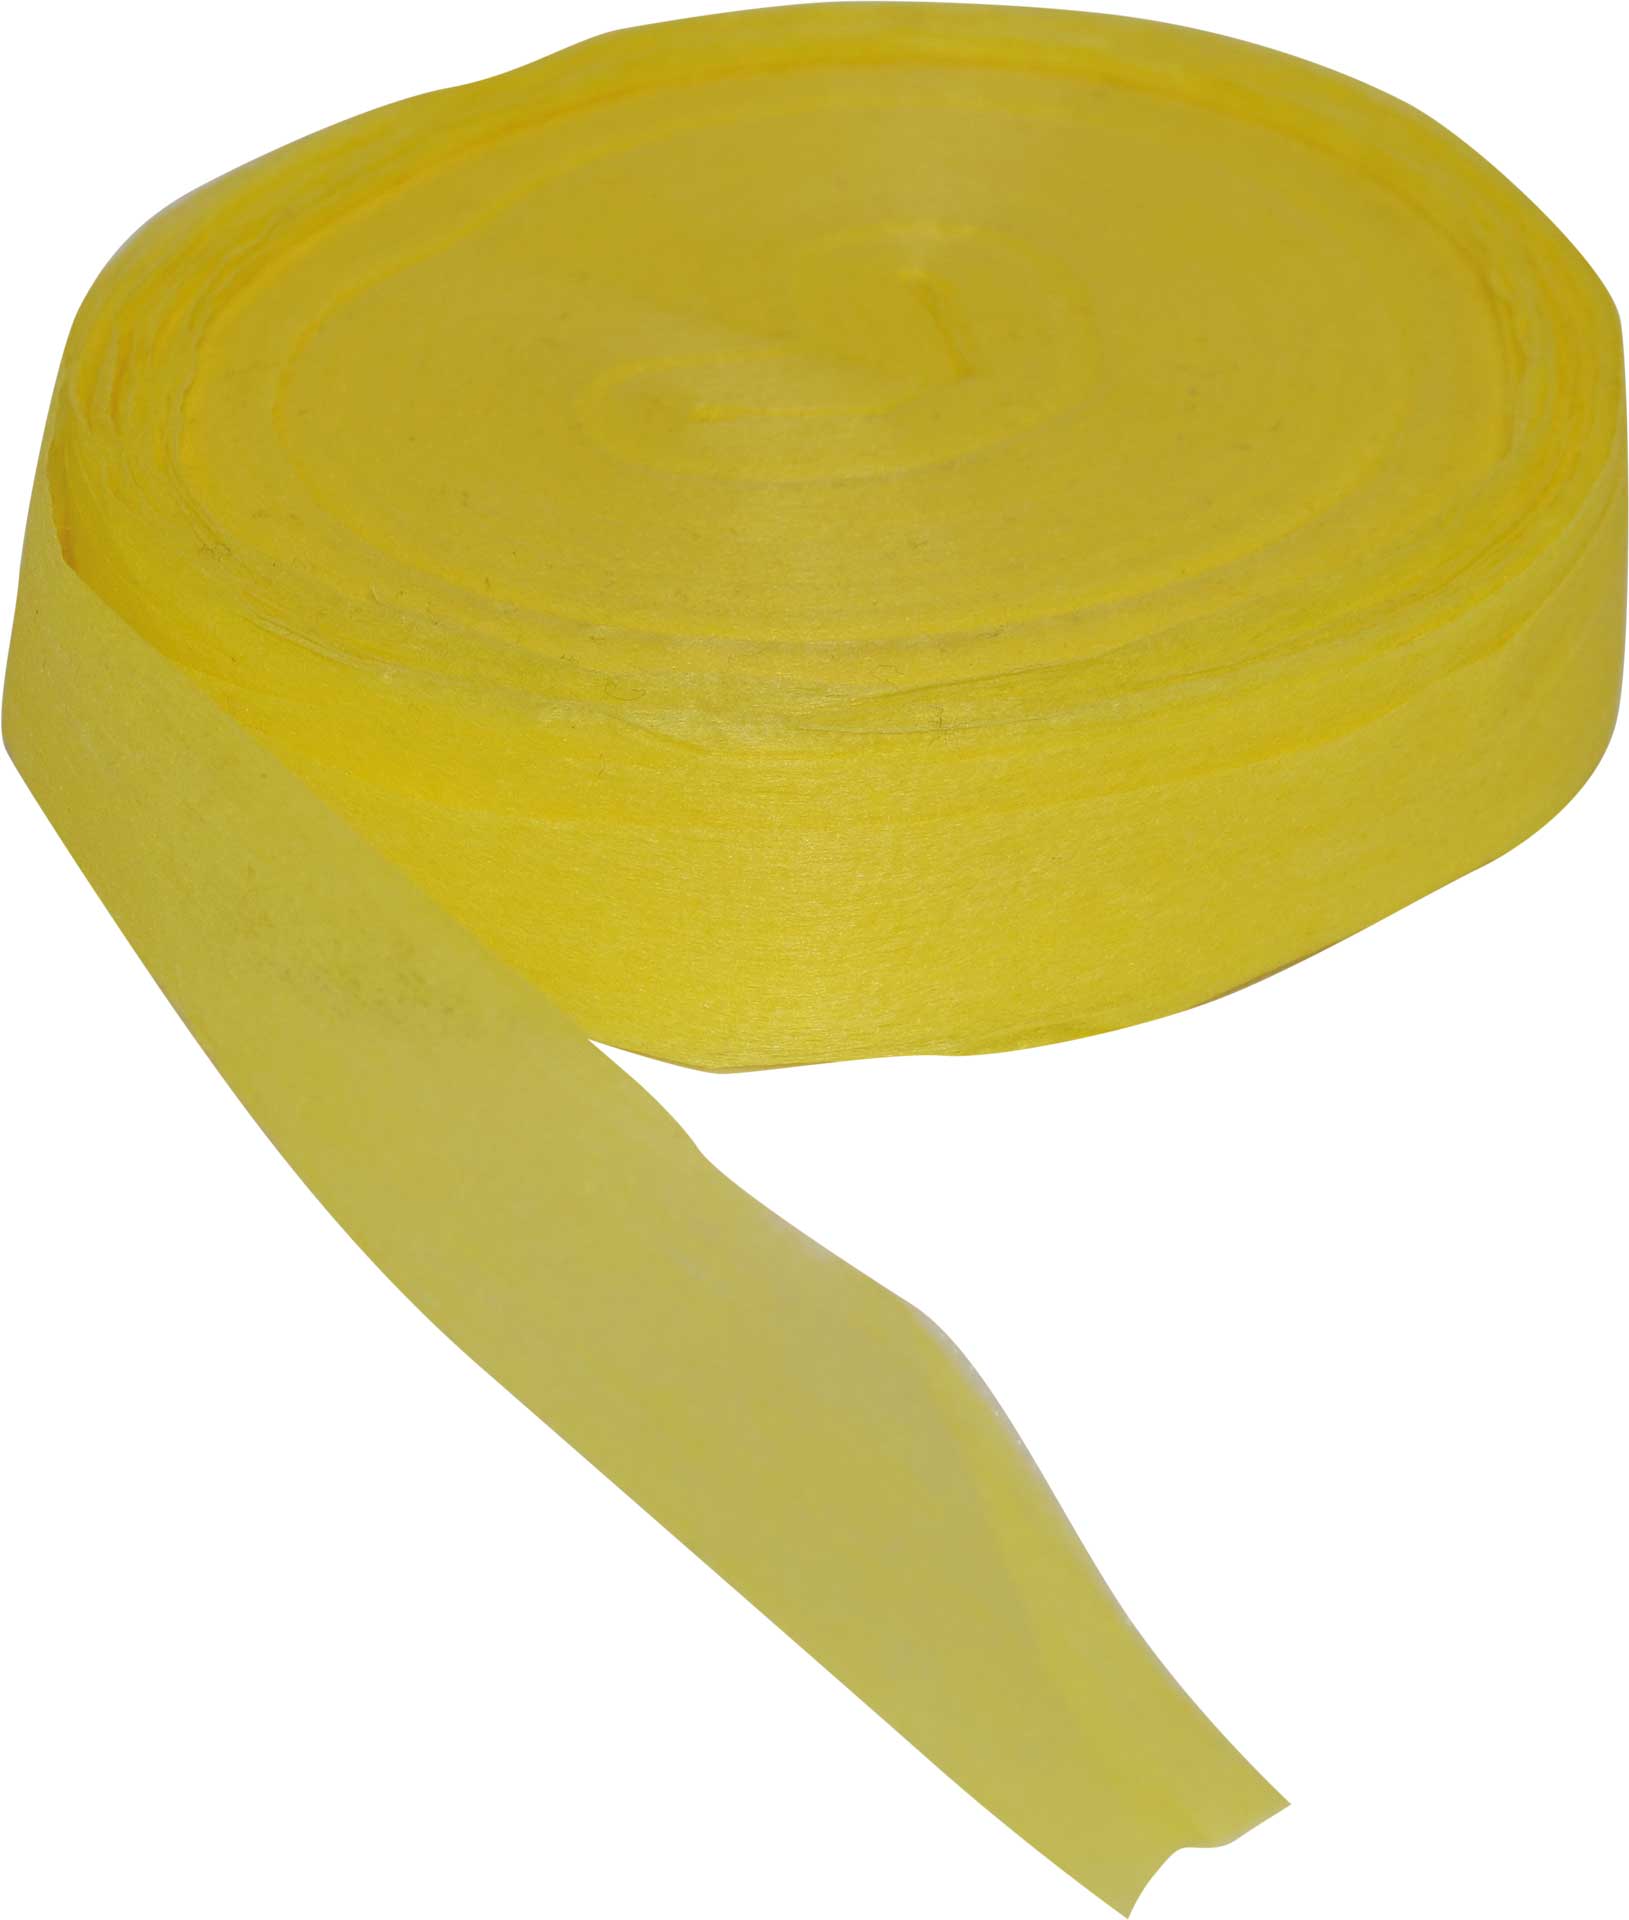 Robbe Modellsport Farbbänder für Wingo 2 in den Farben gelb ca. 75m